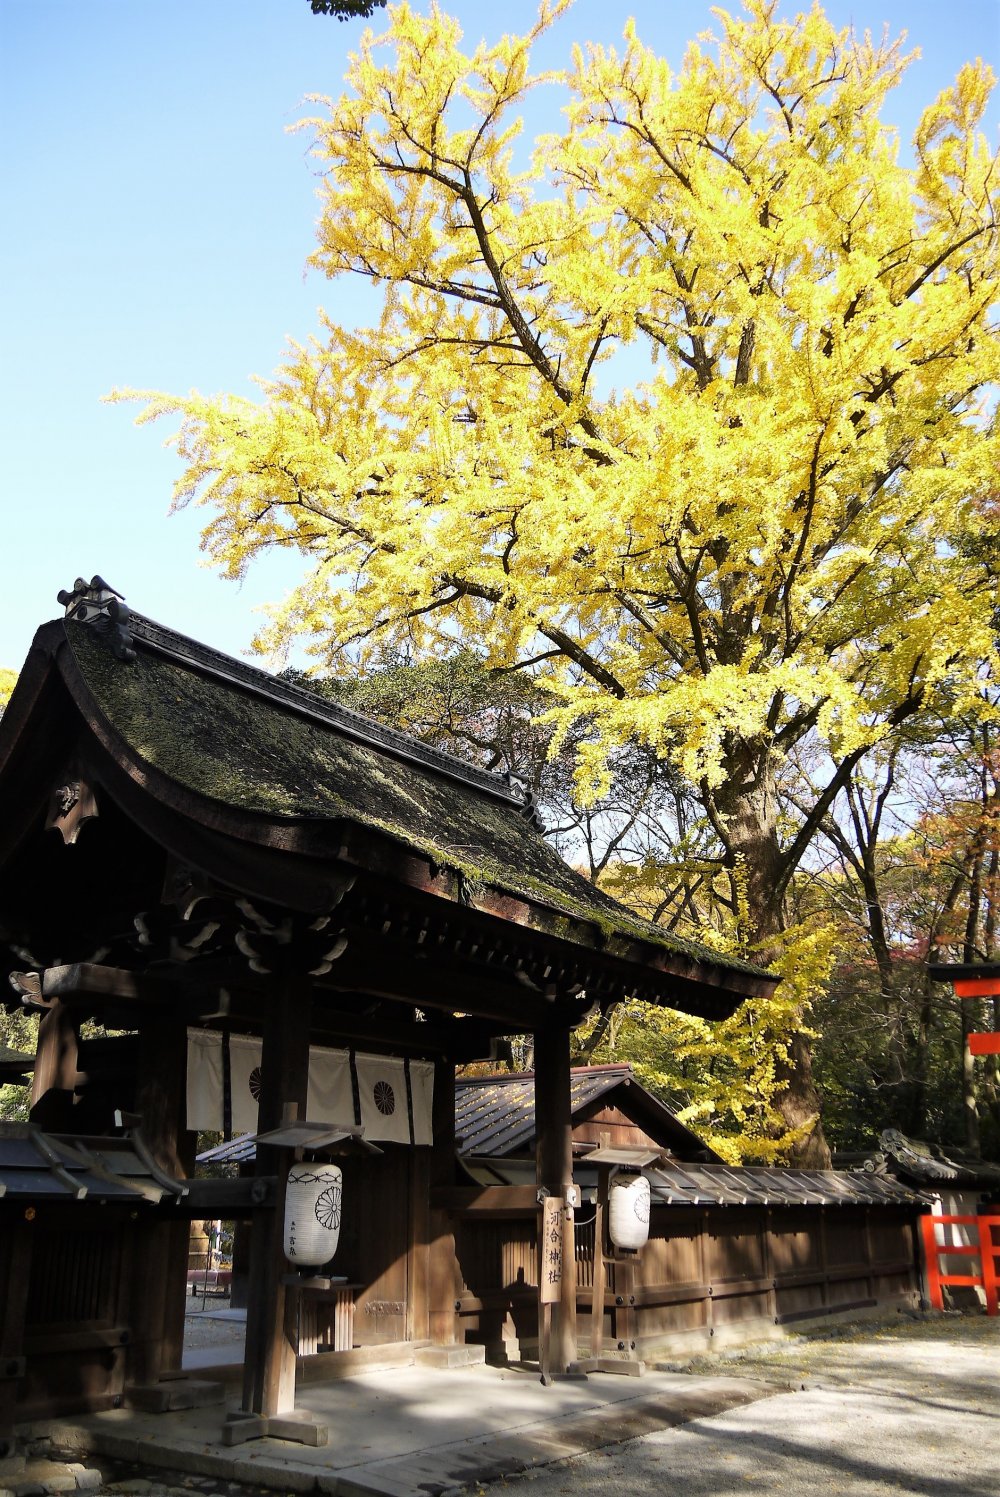 ต้นกิงโกะหรือต้นแปะก้วยตรงประตูทางเข้าศาลเจ้าเปลี่ยนสีเป็นสีเหลืองสวยในฤดูใบไม้ร่วง